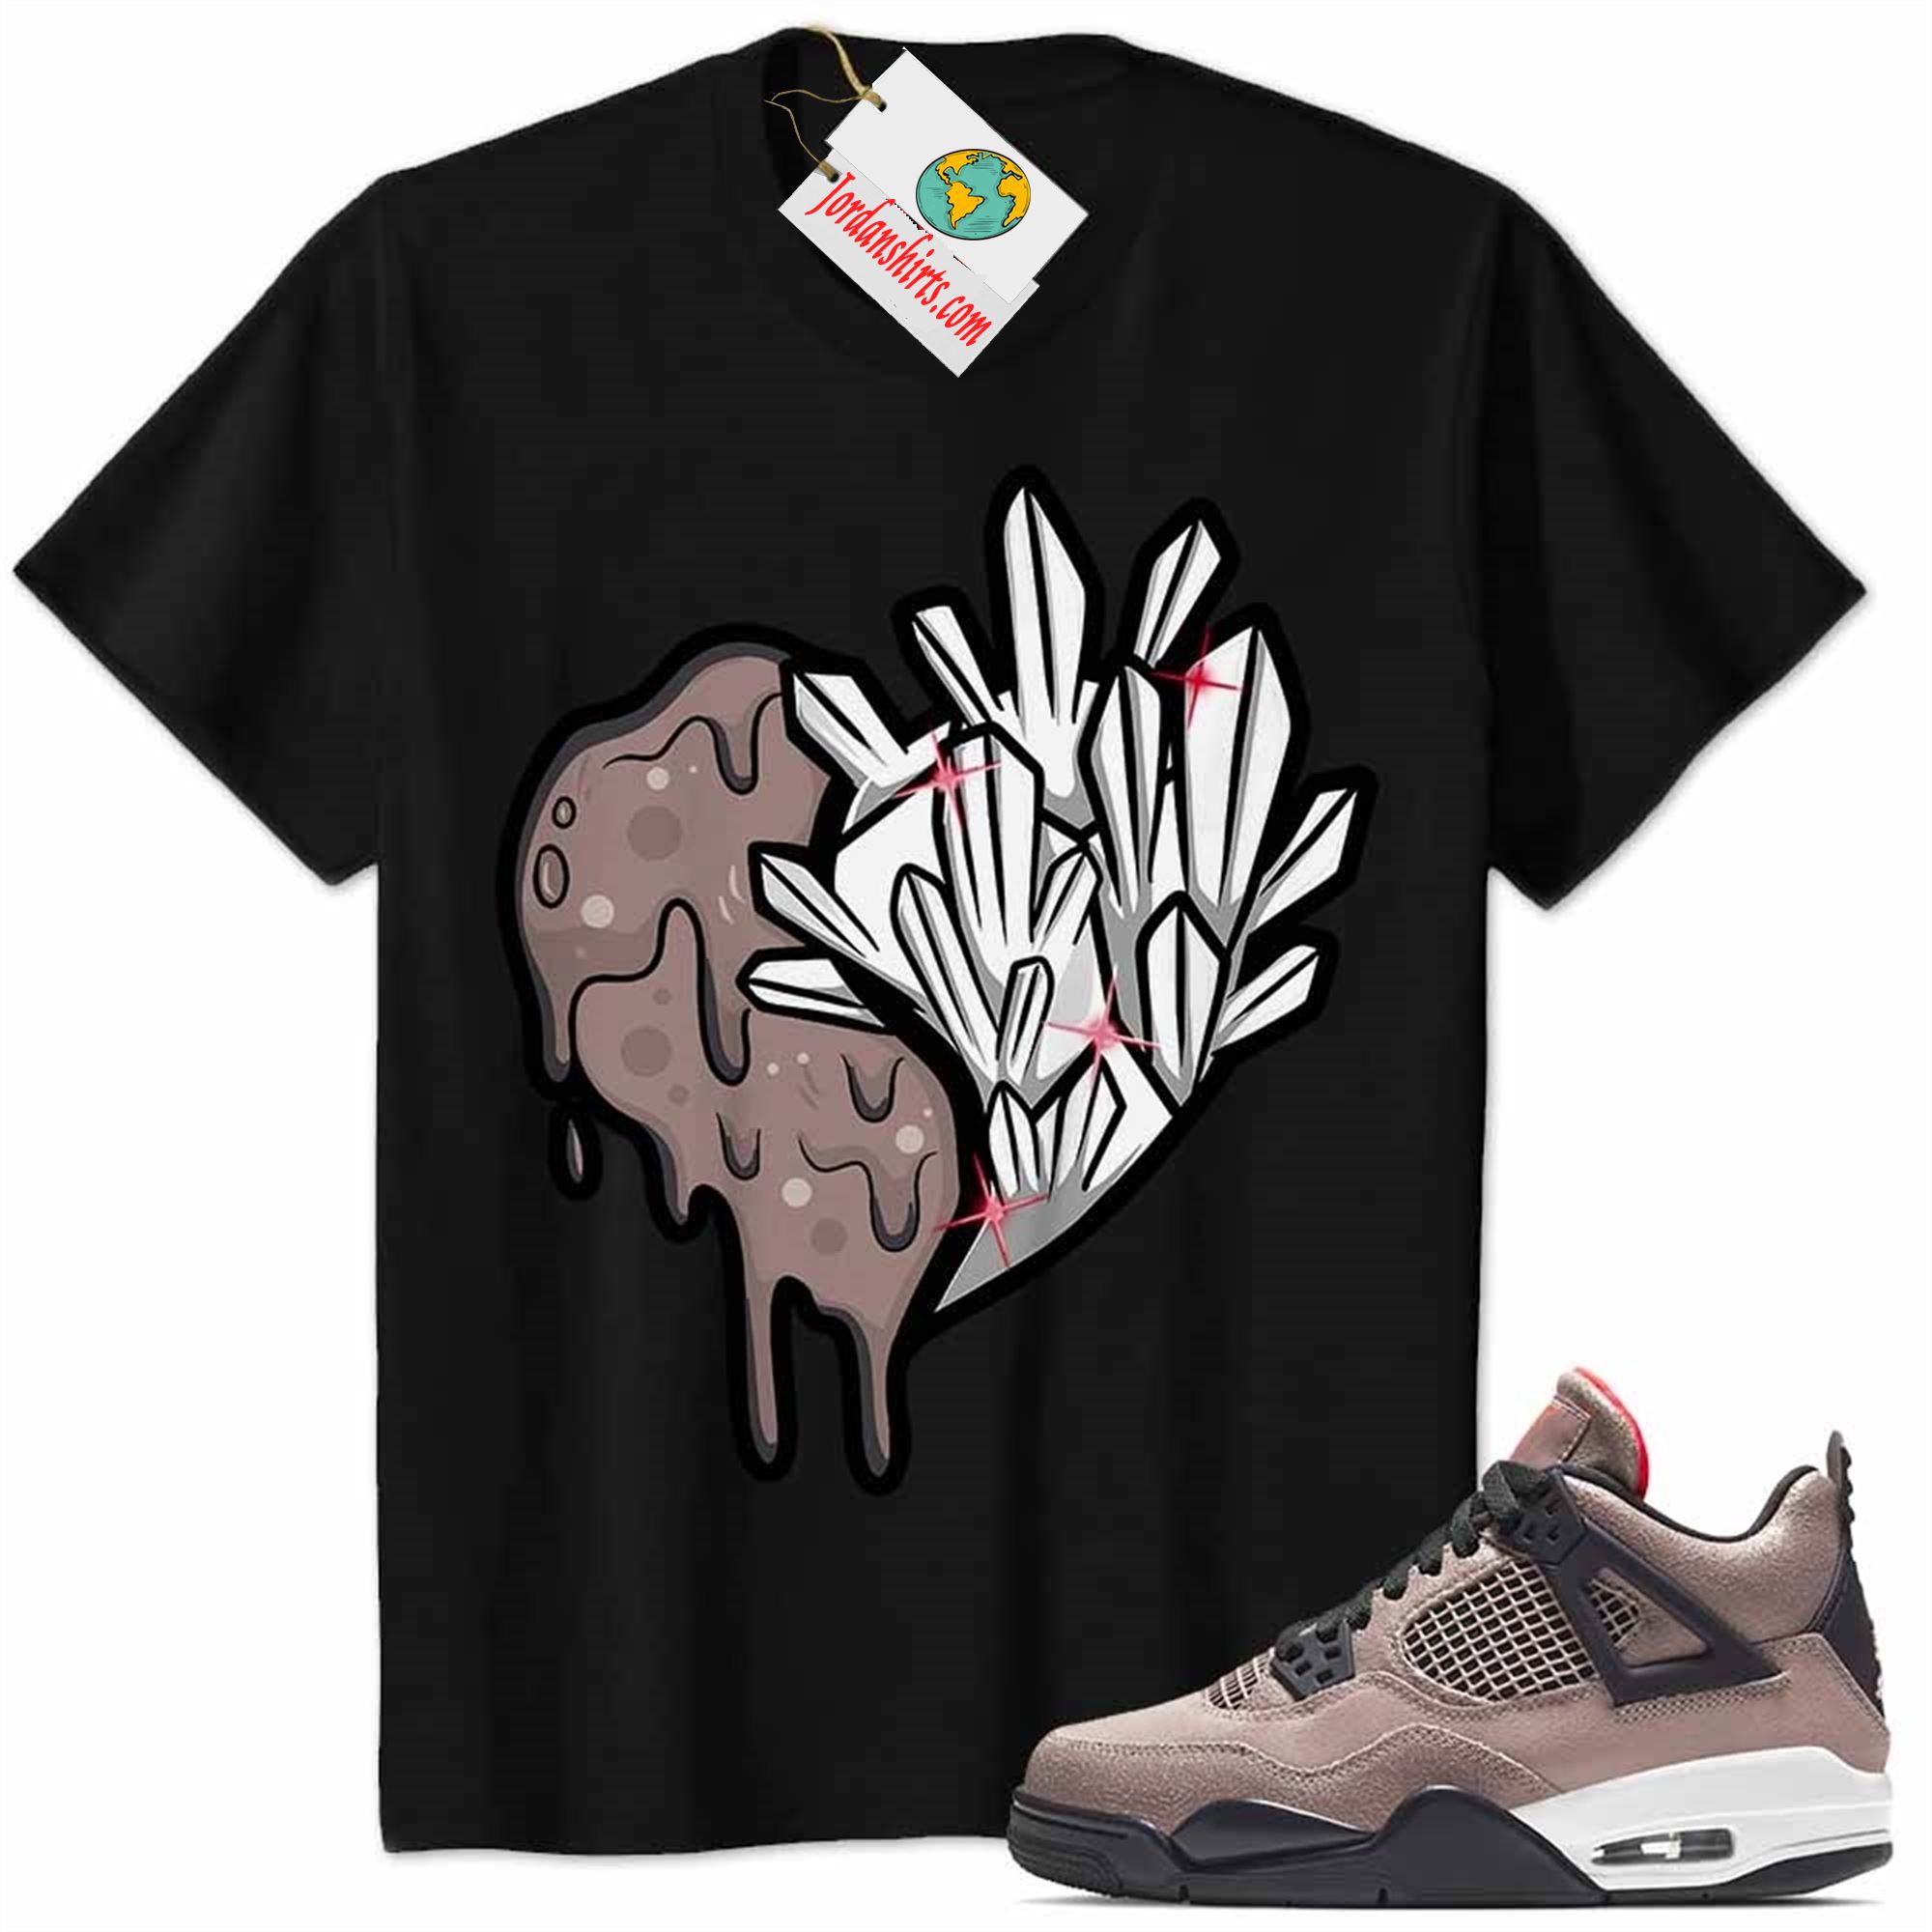 Jordan 4 Shirt, Crystal And Melt Heart Black Air Jordan 4 Taupe Haze 4s Plus Size Up To 5xl